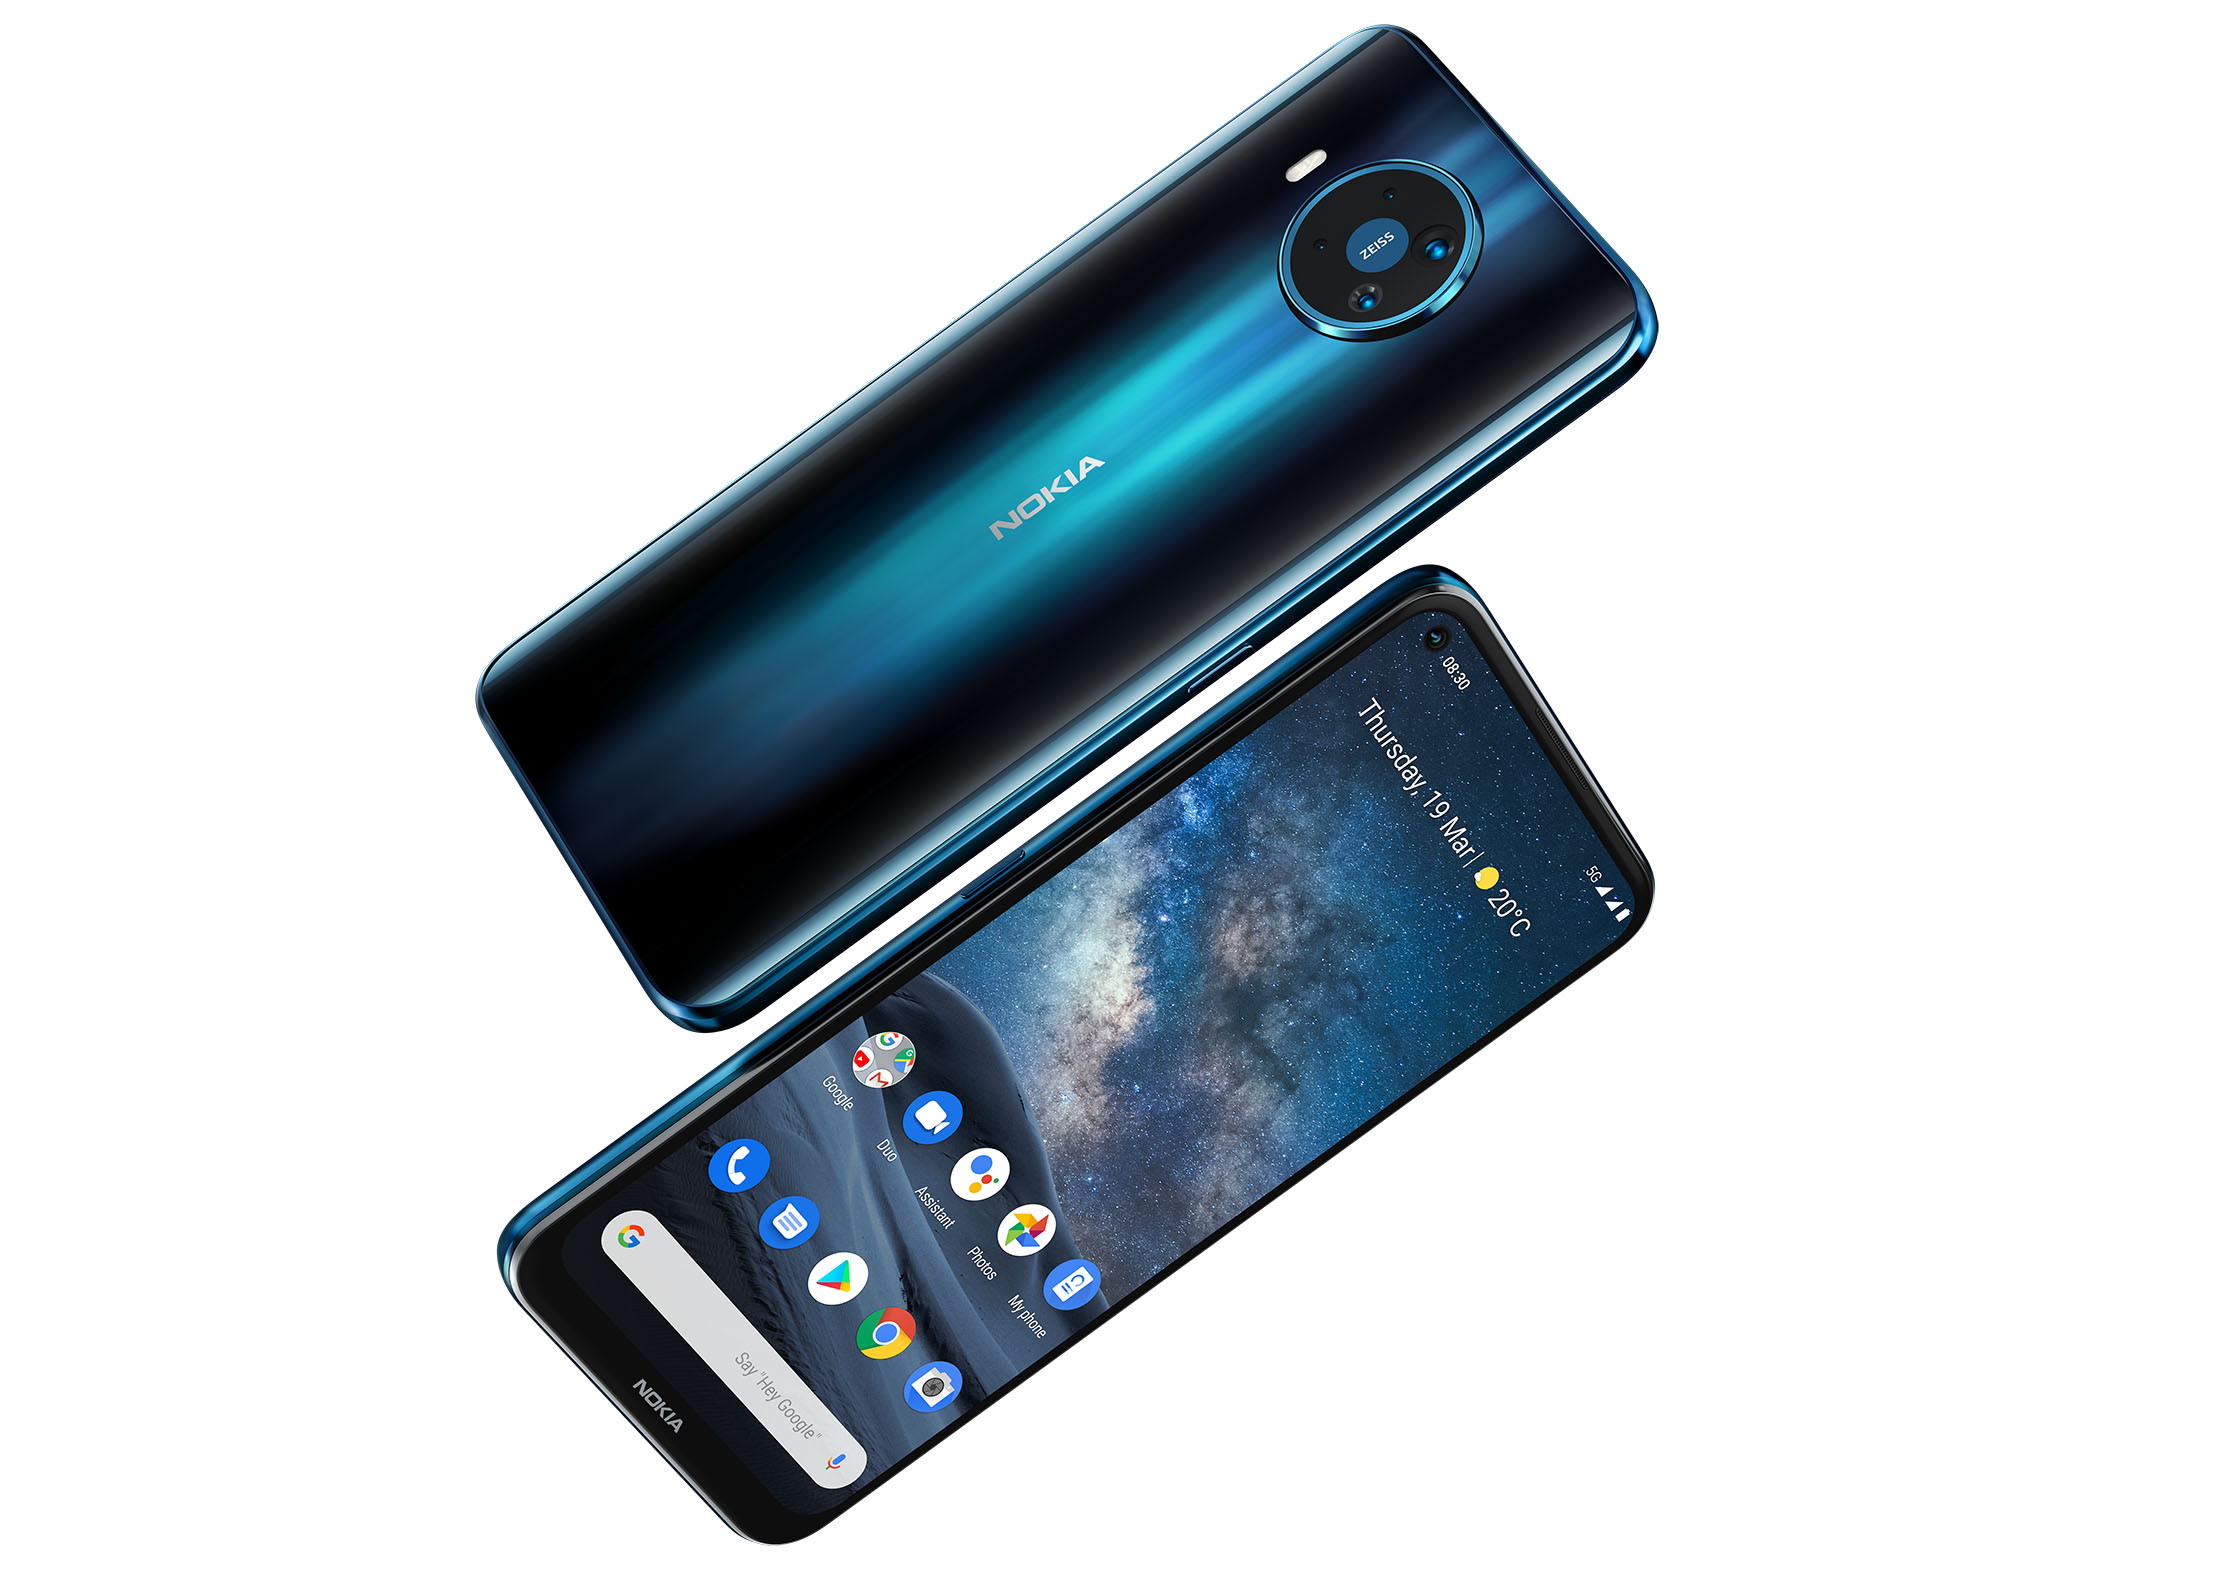 Recenzia smartfónu Nokia 8.3 s kľúčovými vlastnosťami